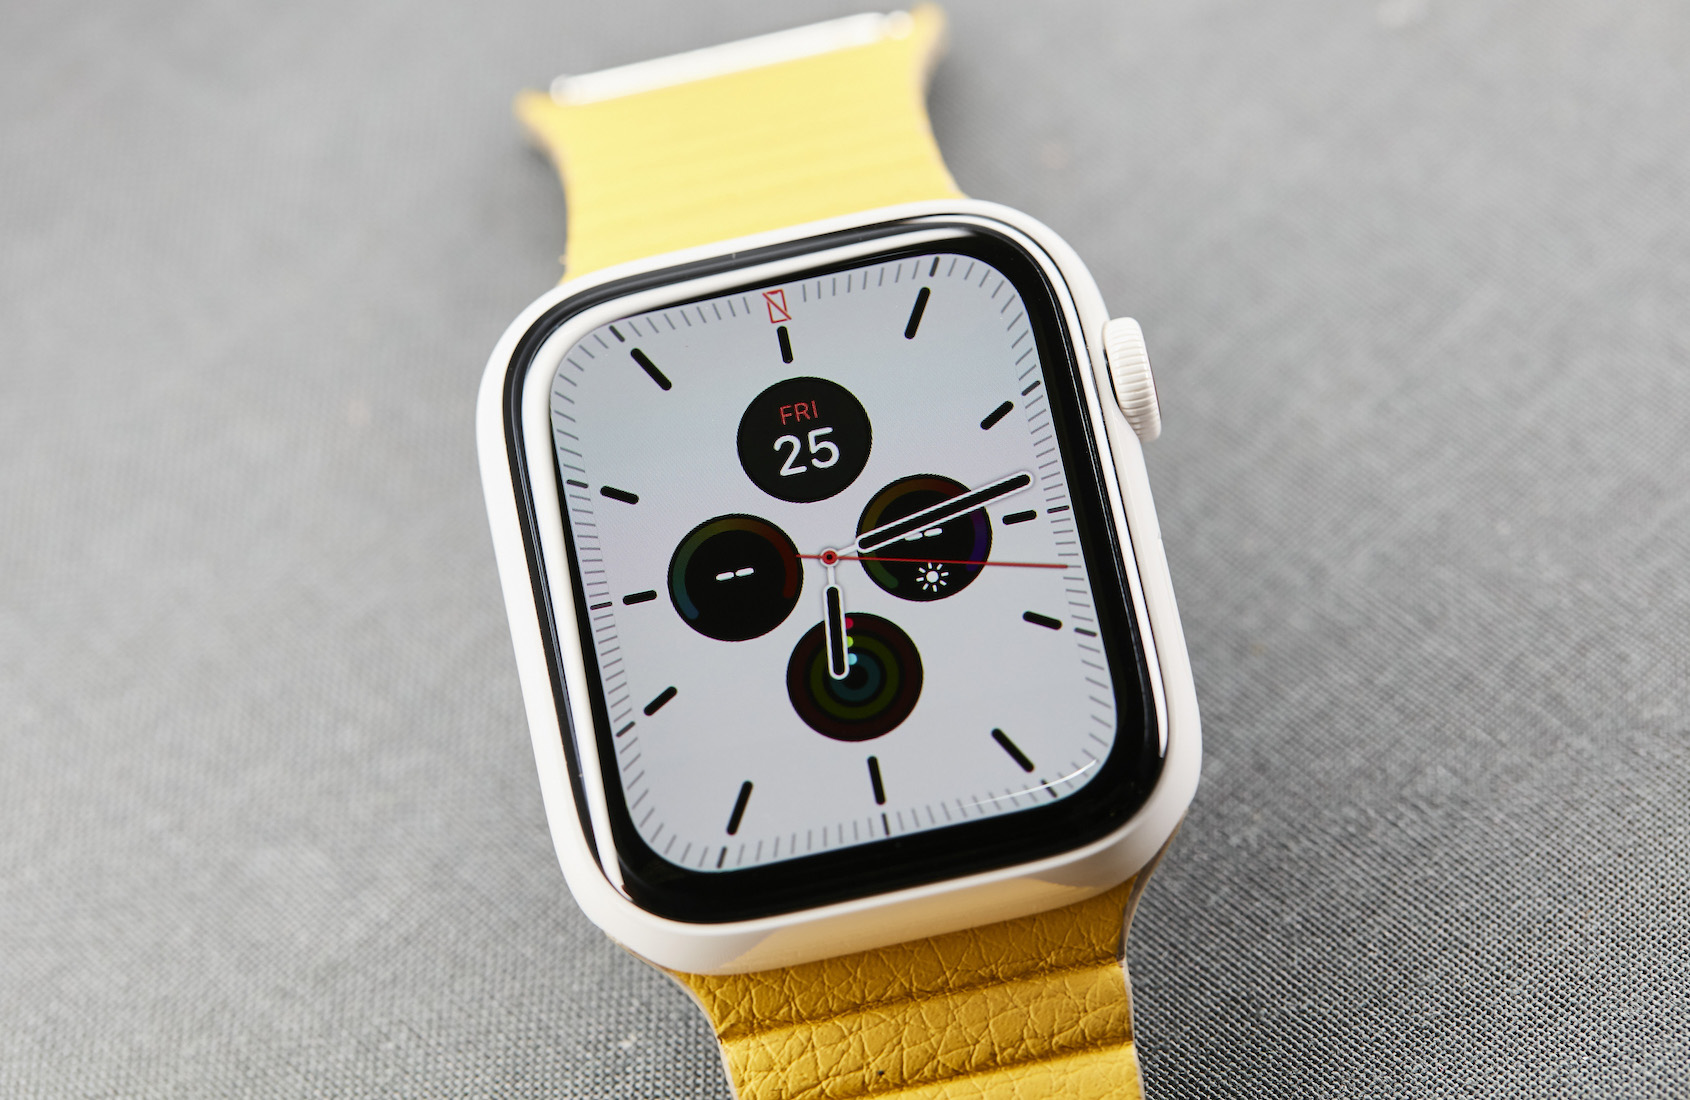 Best smart watches 2020 Hublot Tag Heuer Timex